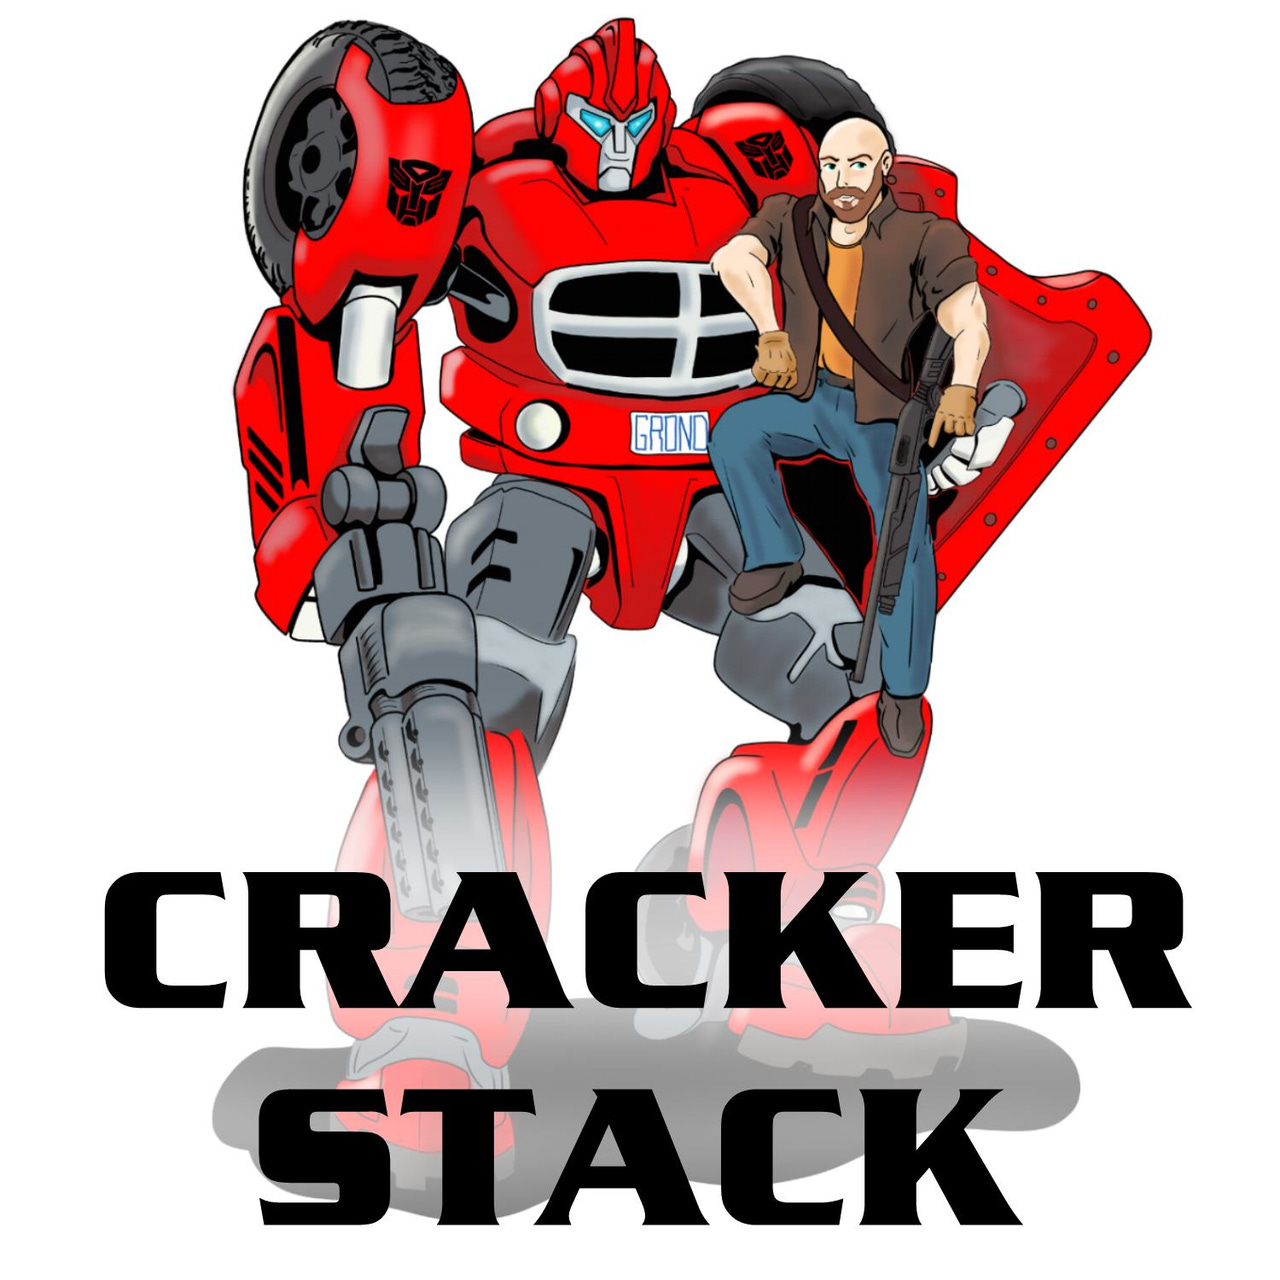 The CrackerStack